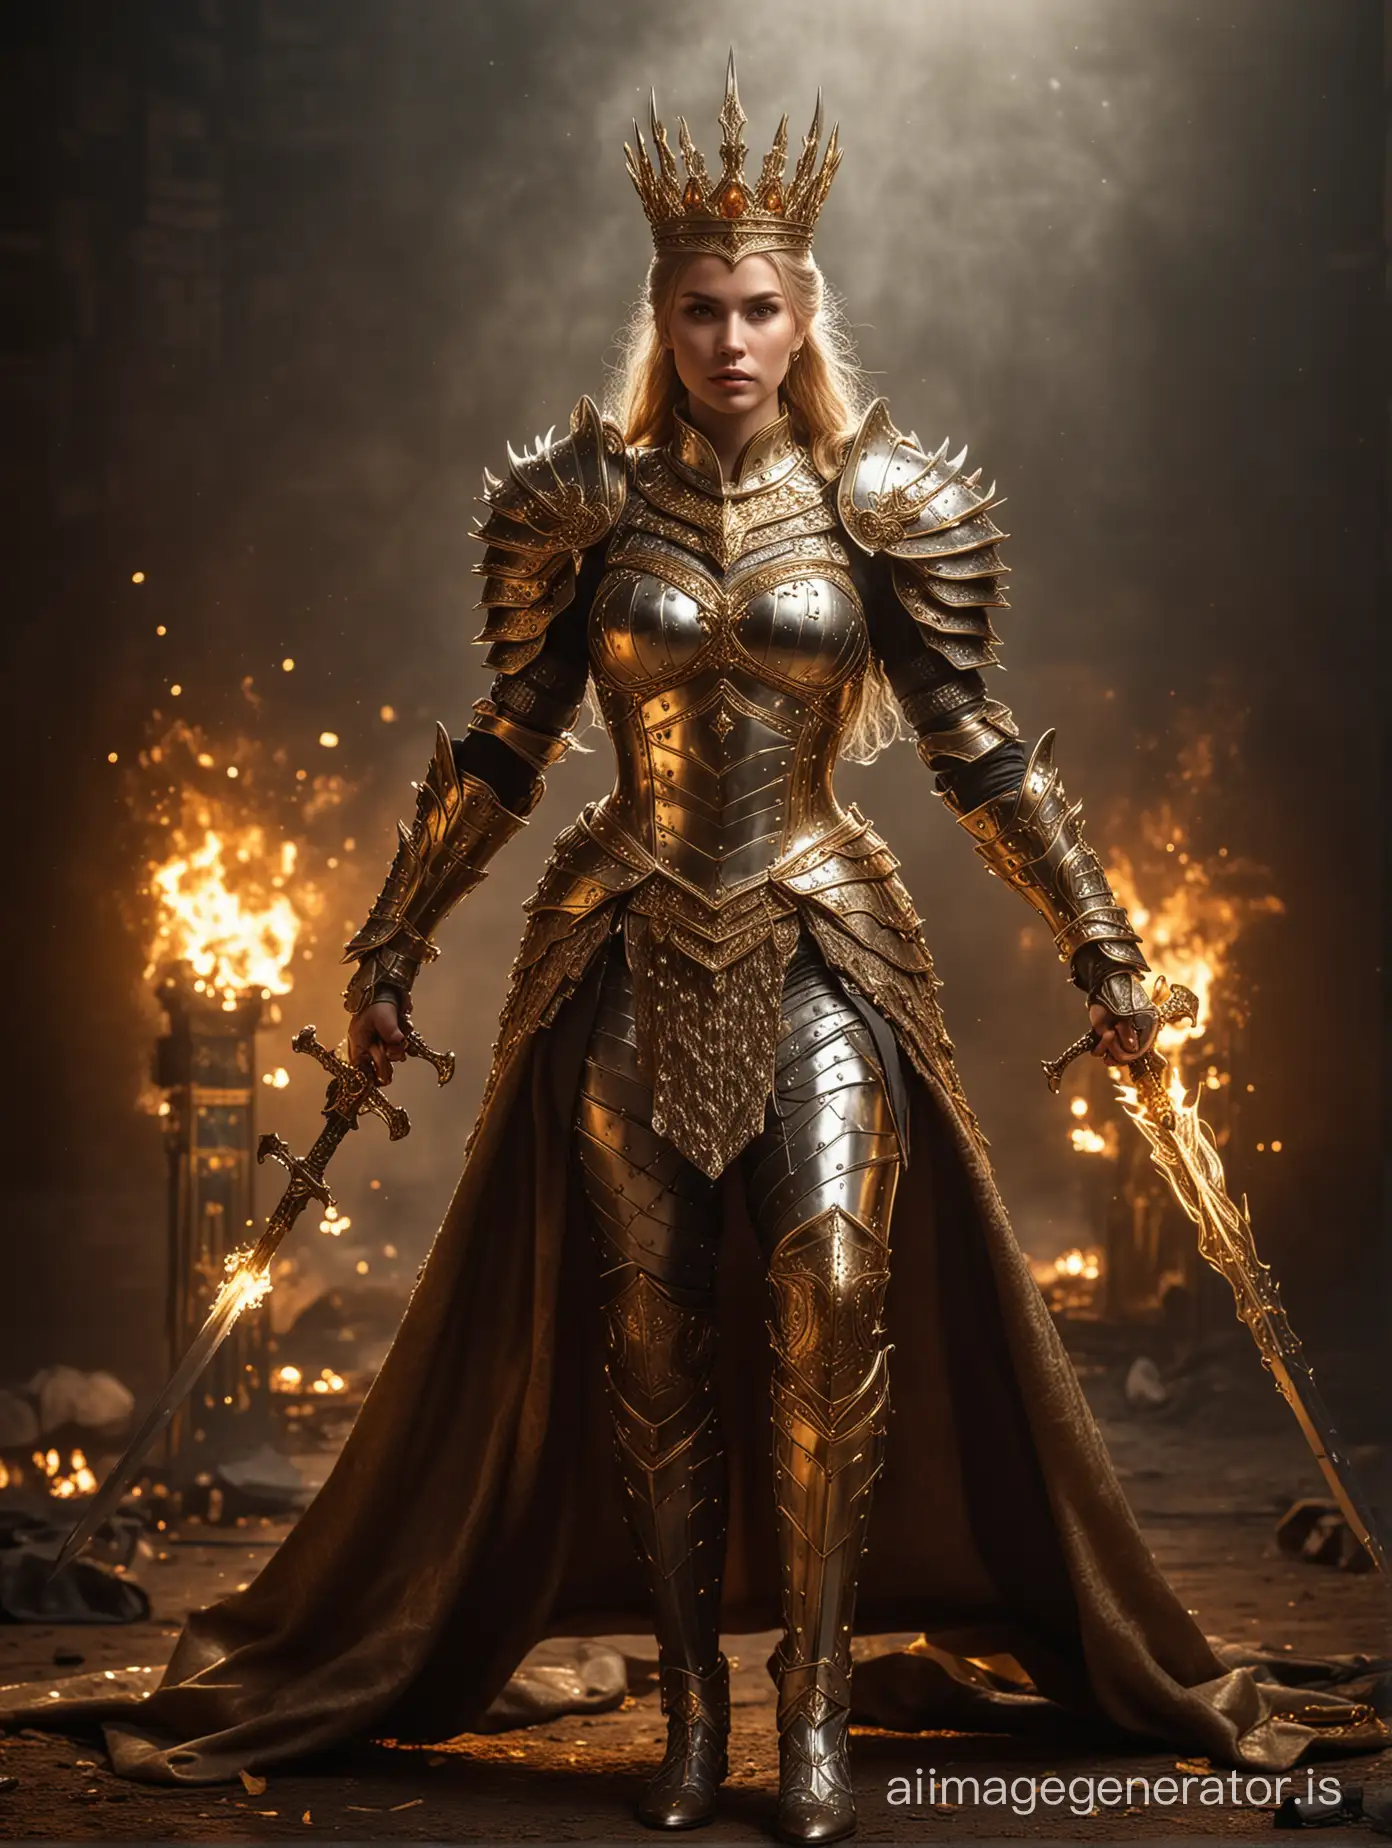 Regal-Queen-in-Ornate-Golden-Armor-Wielding-a-Decorative-Sword-in-Fiery-Battle